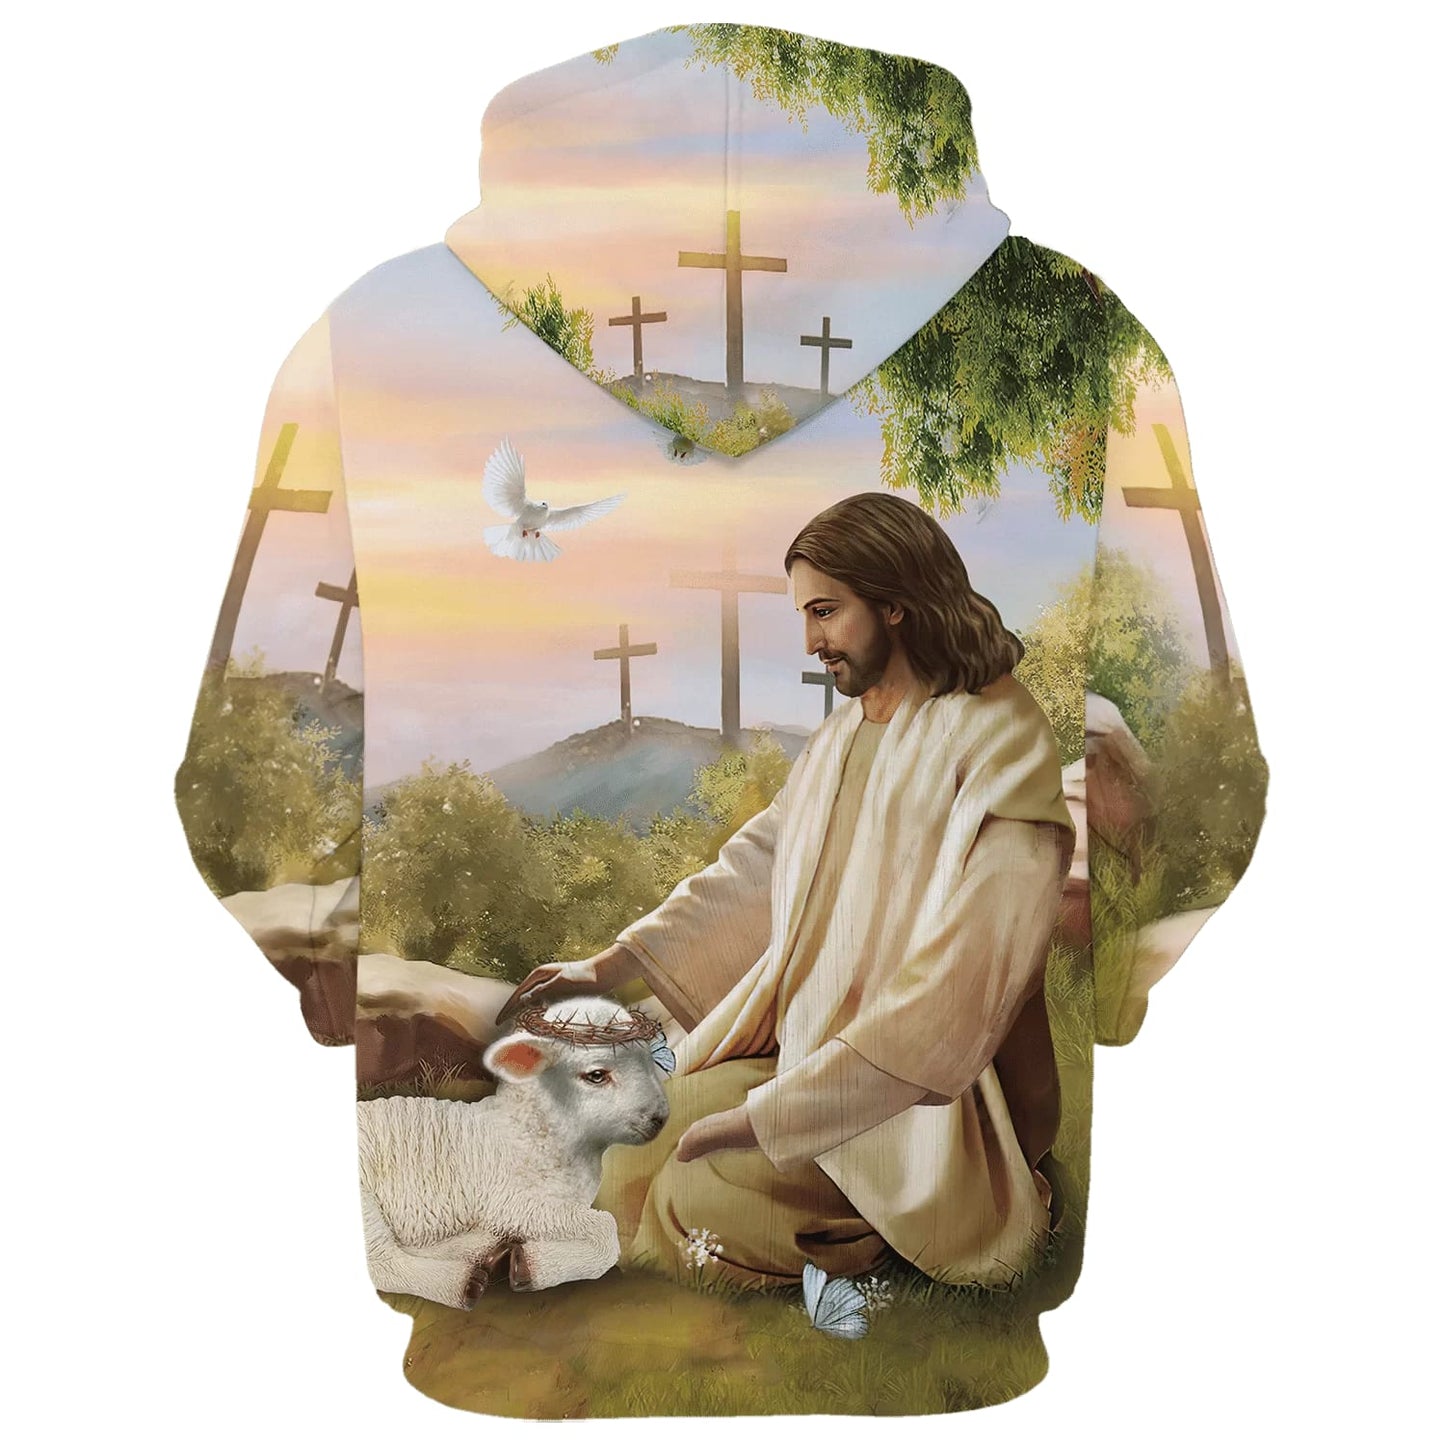 Give It To God And Go To Sleep - Jesus And The Lamb Hoodies - Jesus Hoodie - Men & Women Christian Hoodie - 3D Printed Hoodie